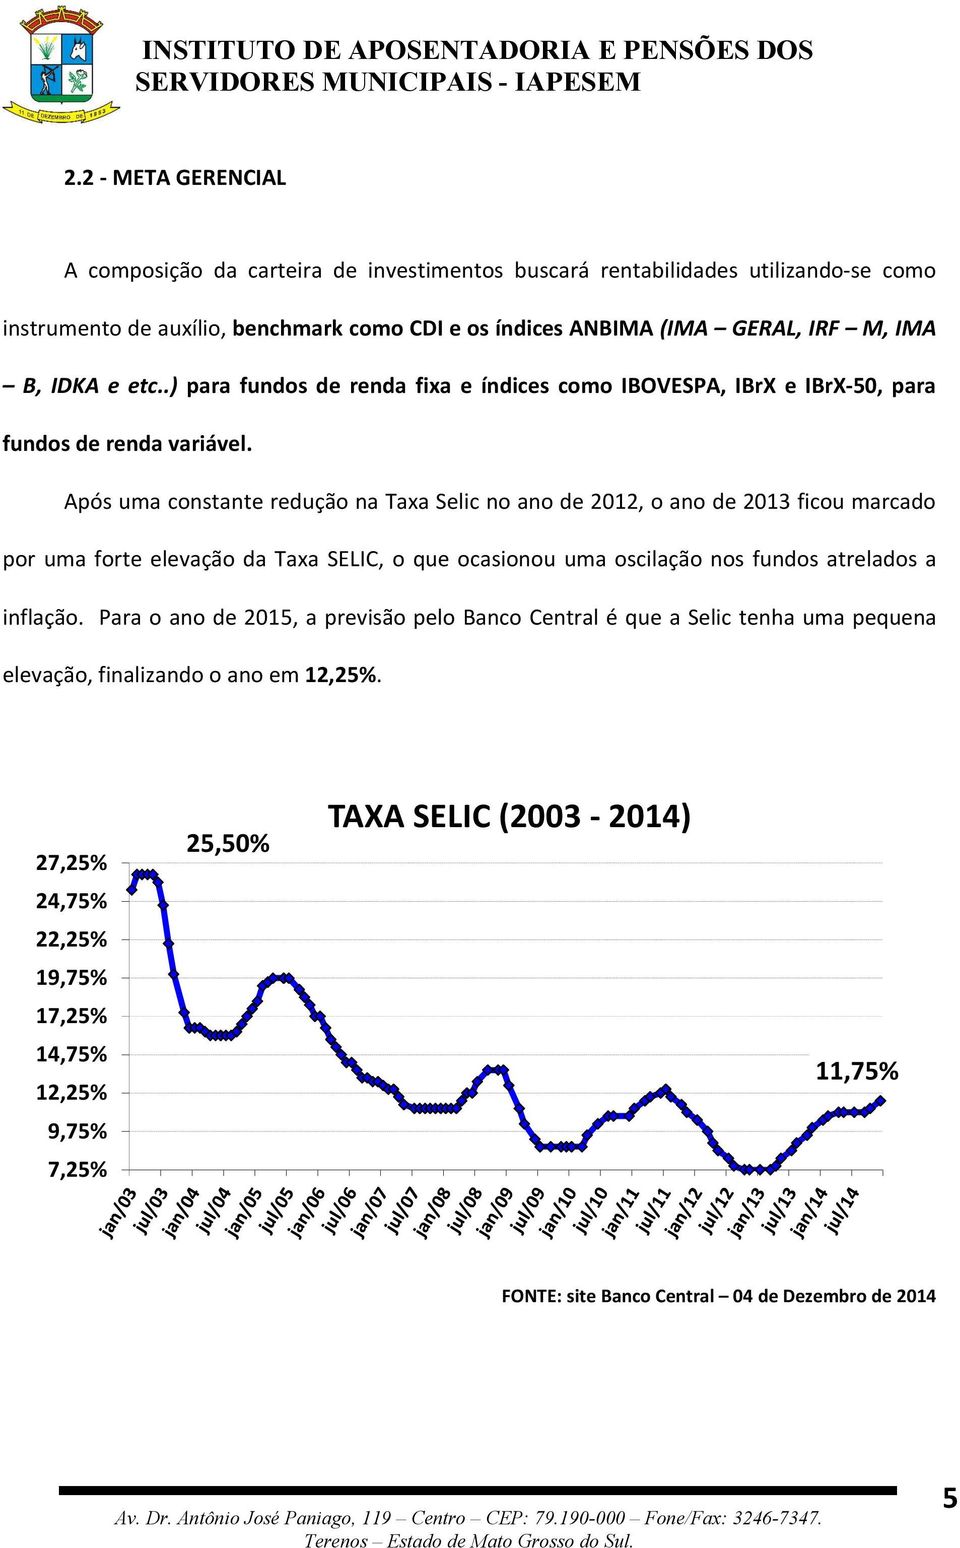 Após uma constante redução na Taxa Selic no ano de 2012, o ano de 2013 ficou marcado por uma forte elevação da Taxa SELIC, o que ocasionou uma oscilação nos fundos atrelados a inflação.